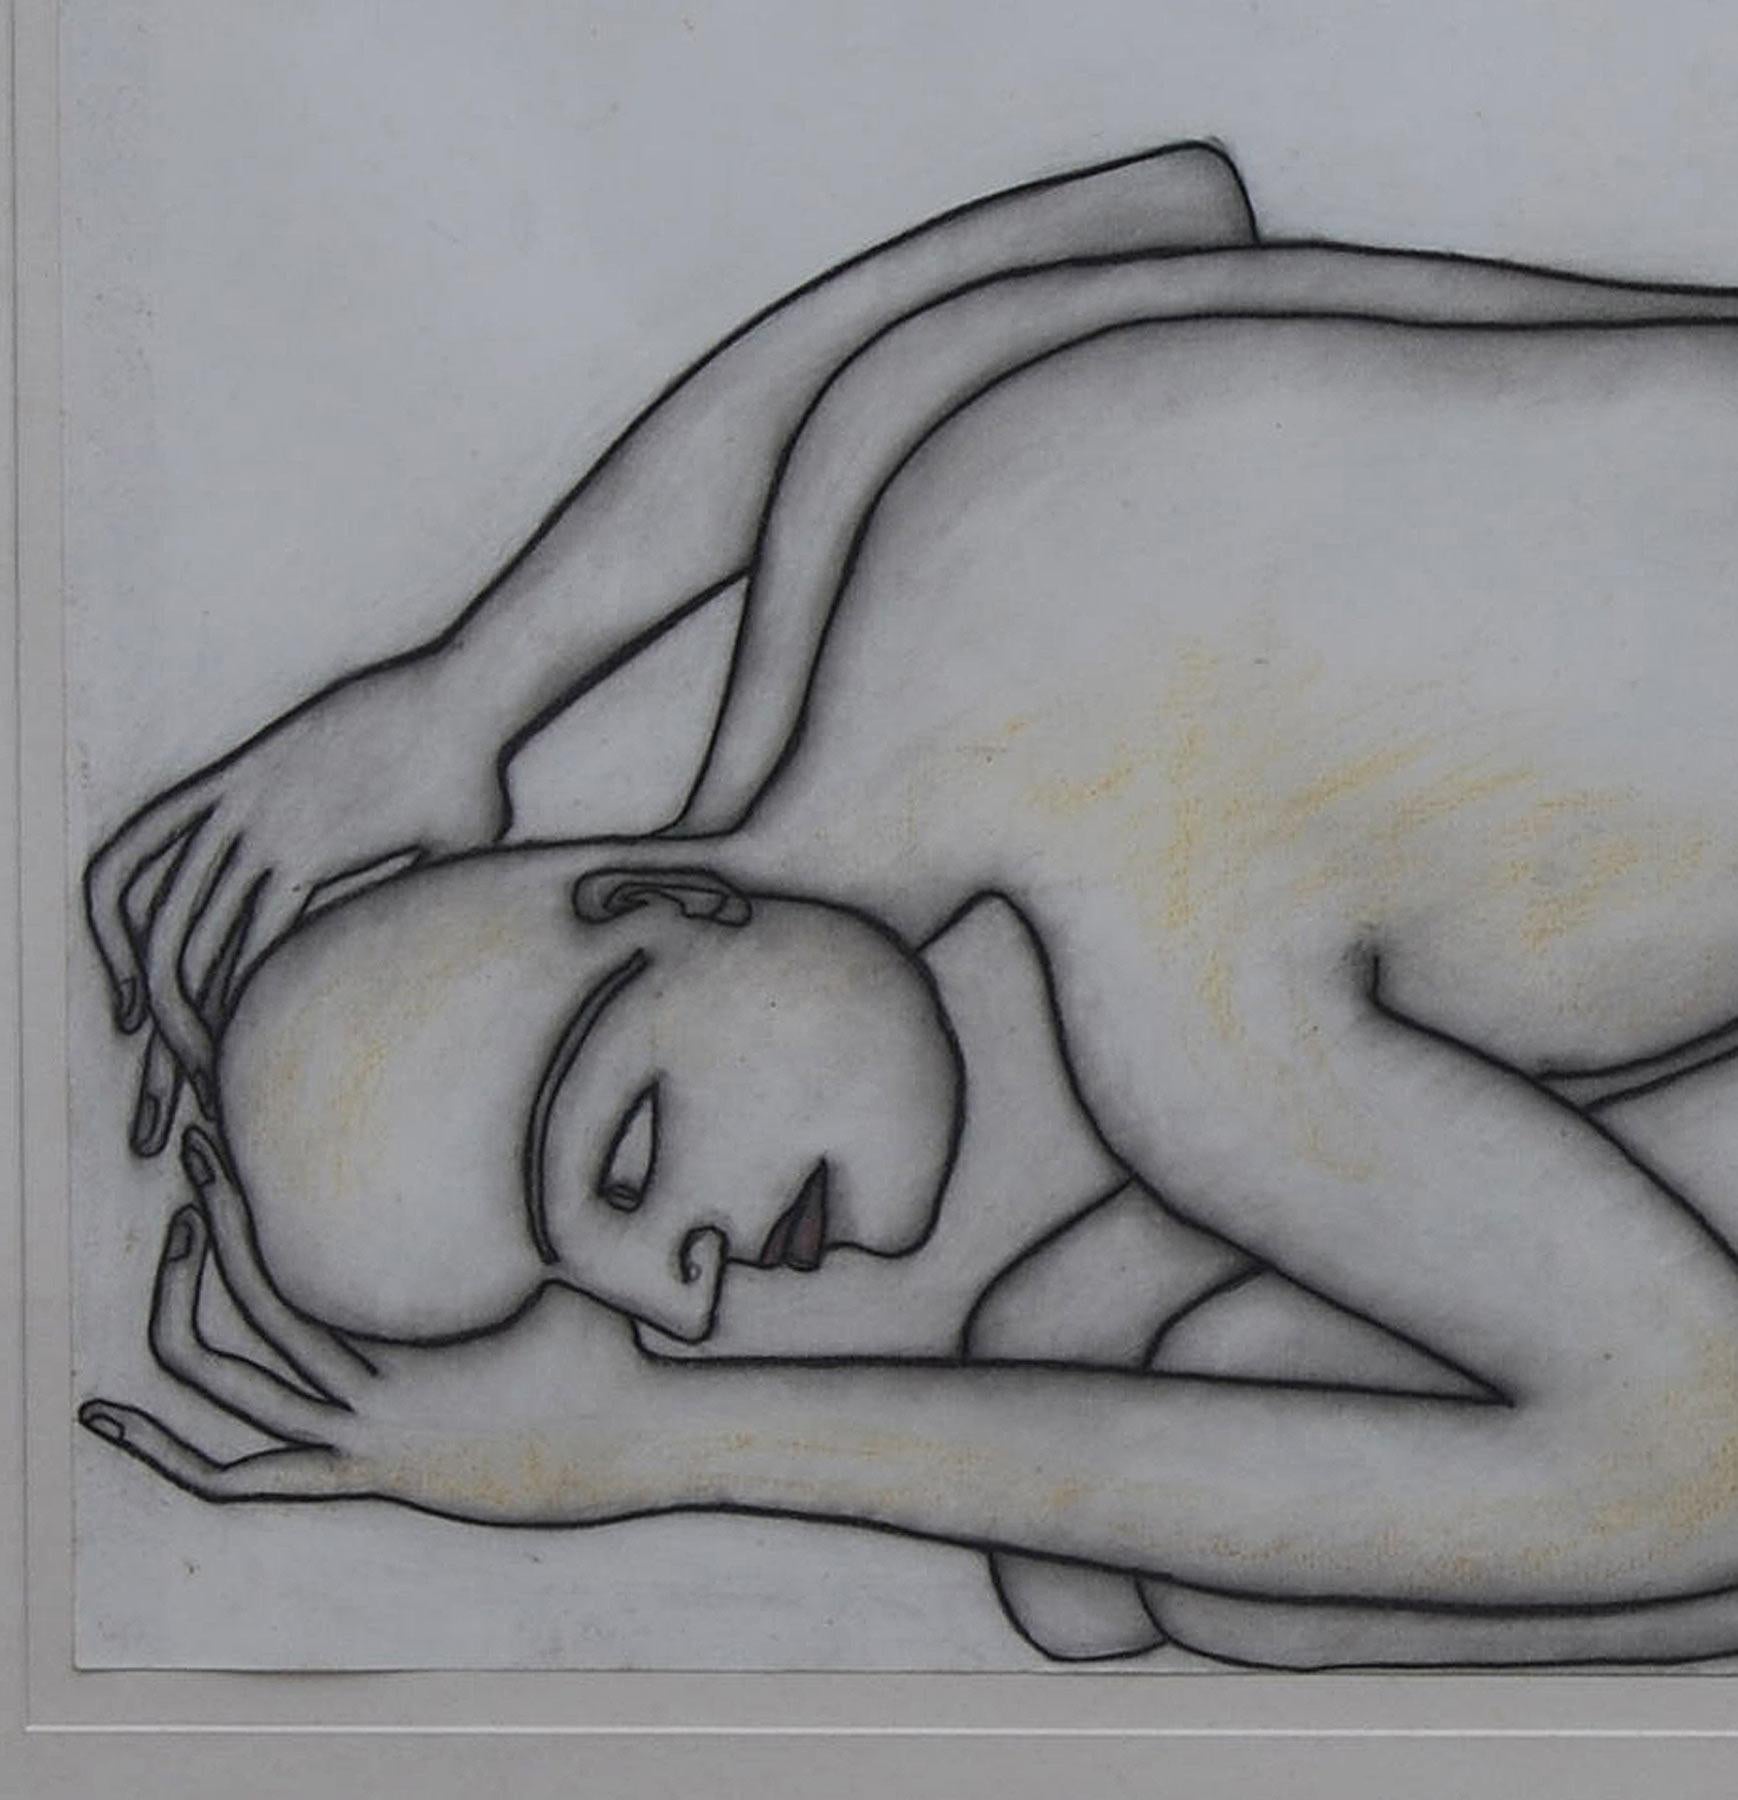 Man Kneeling on the floor, Nude, Pastel on paper by Modern Artist 